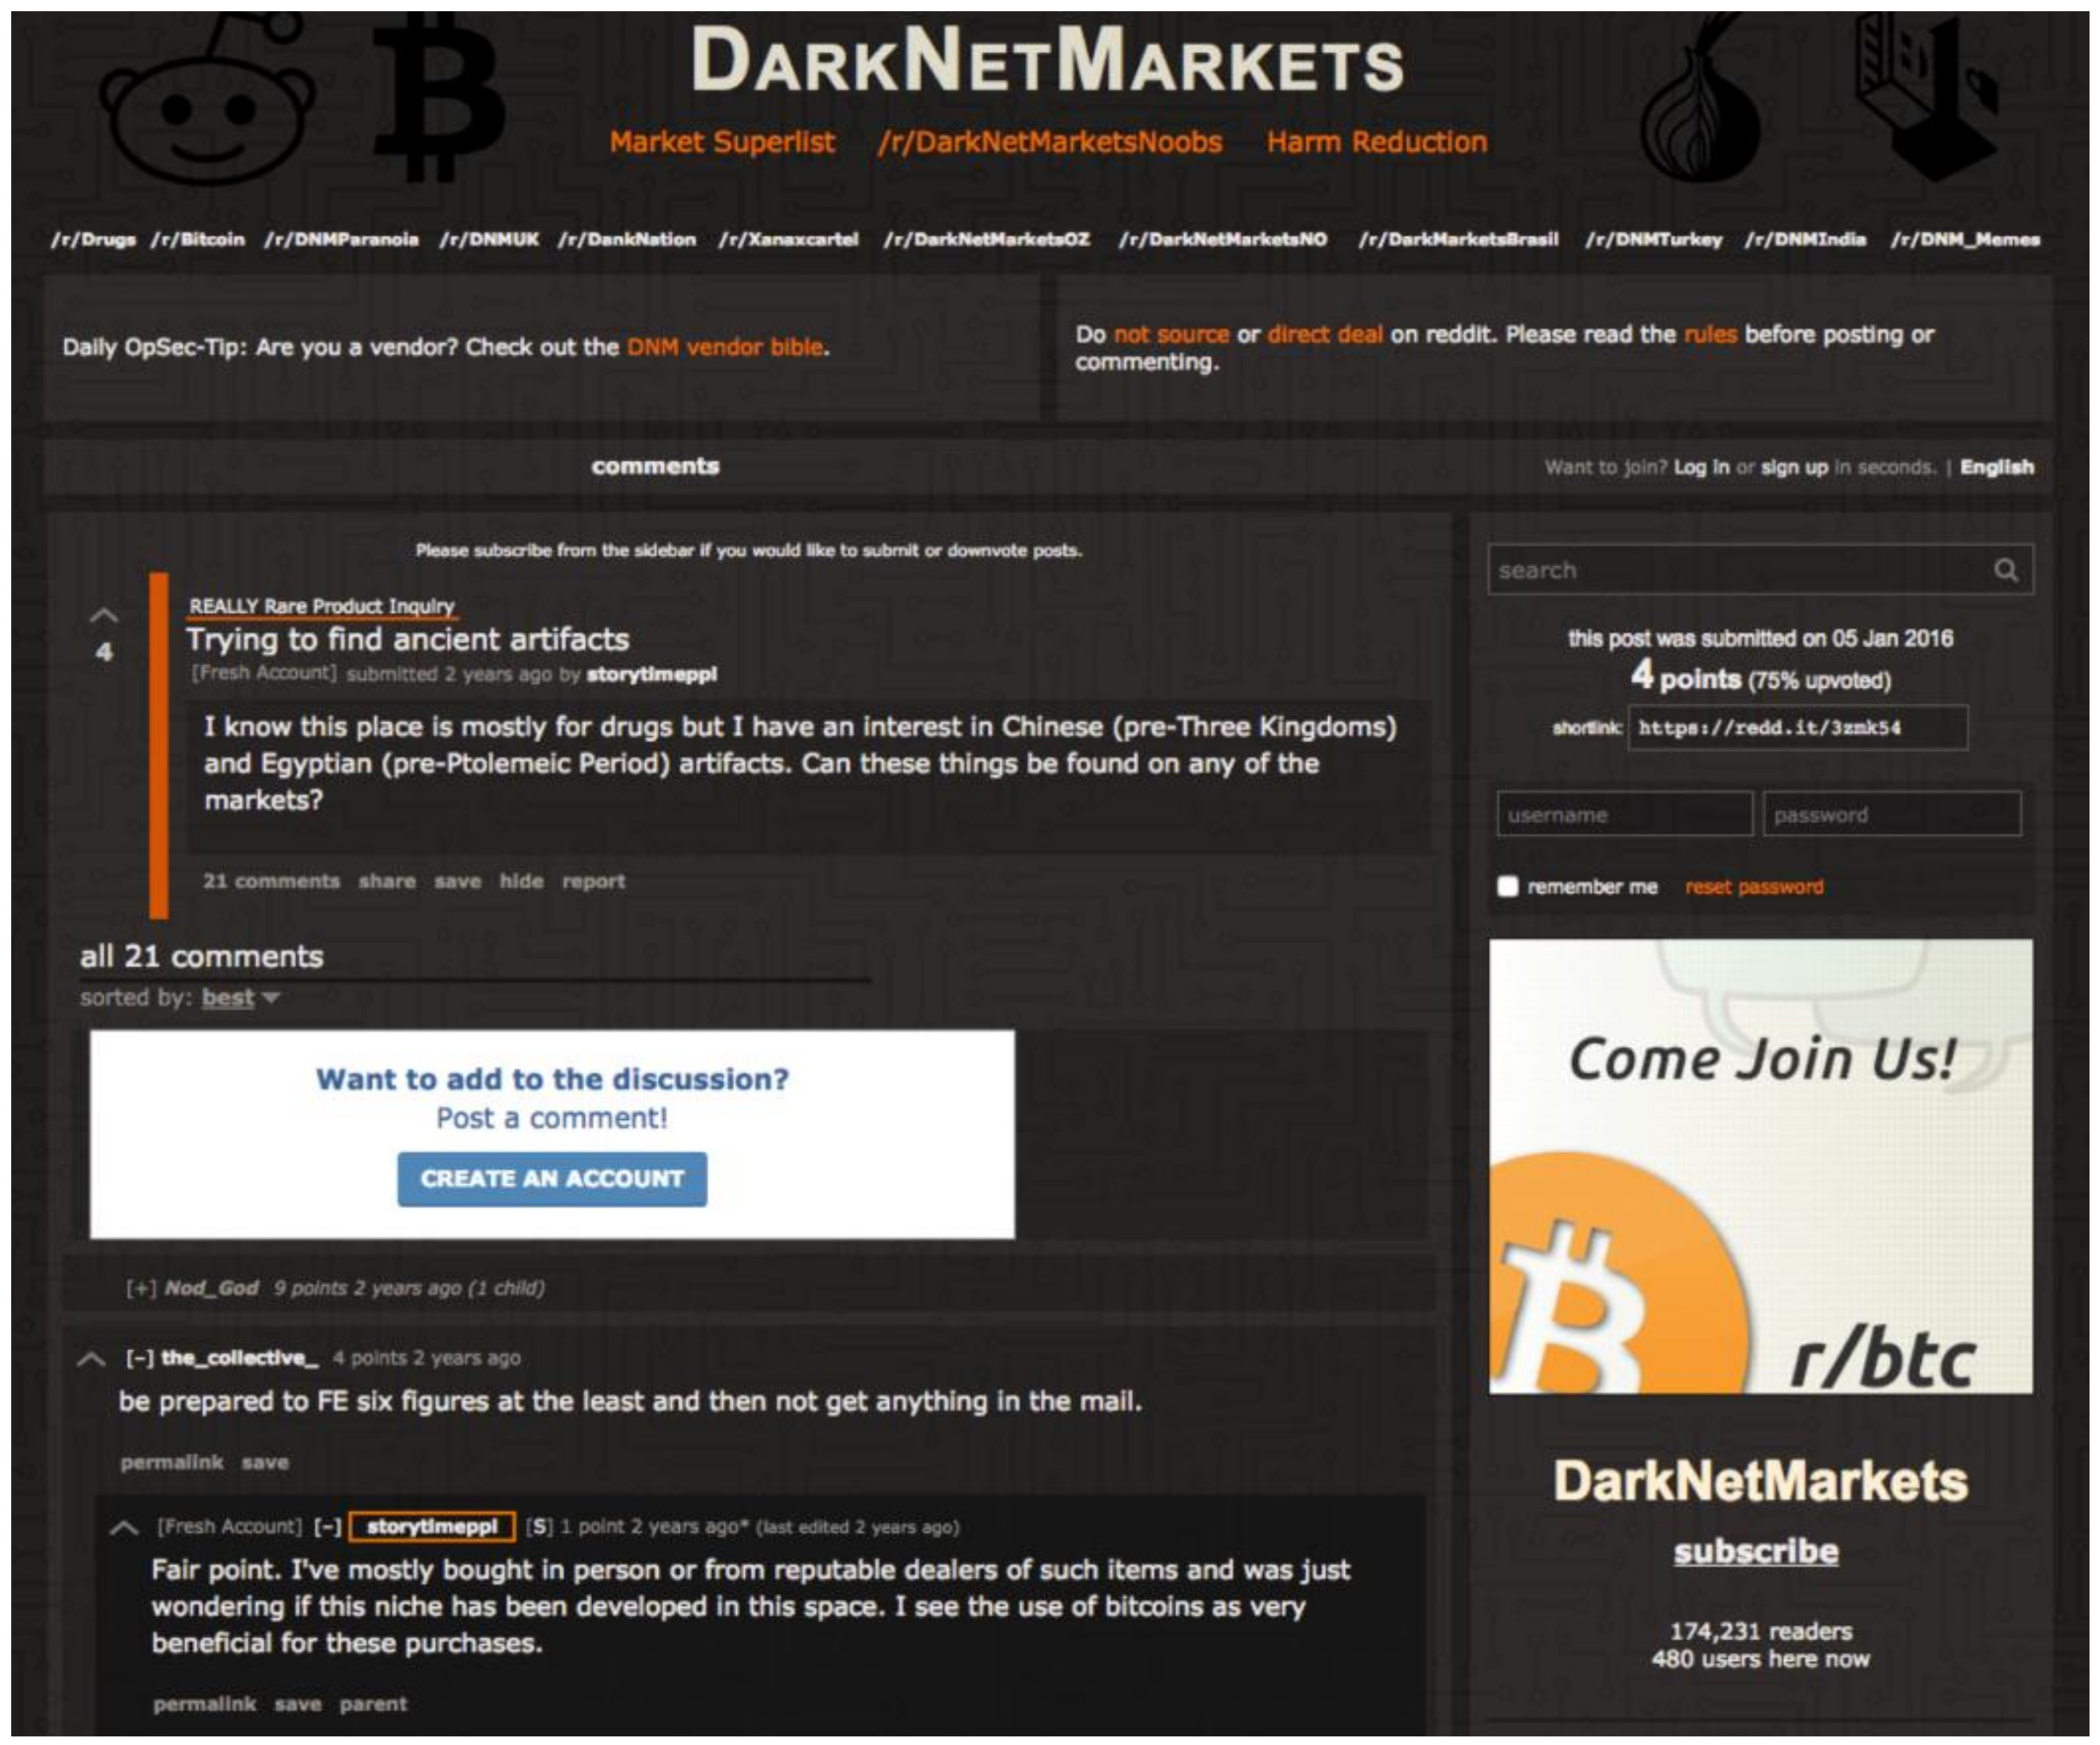 Brucelean Darknet Market